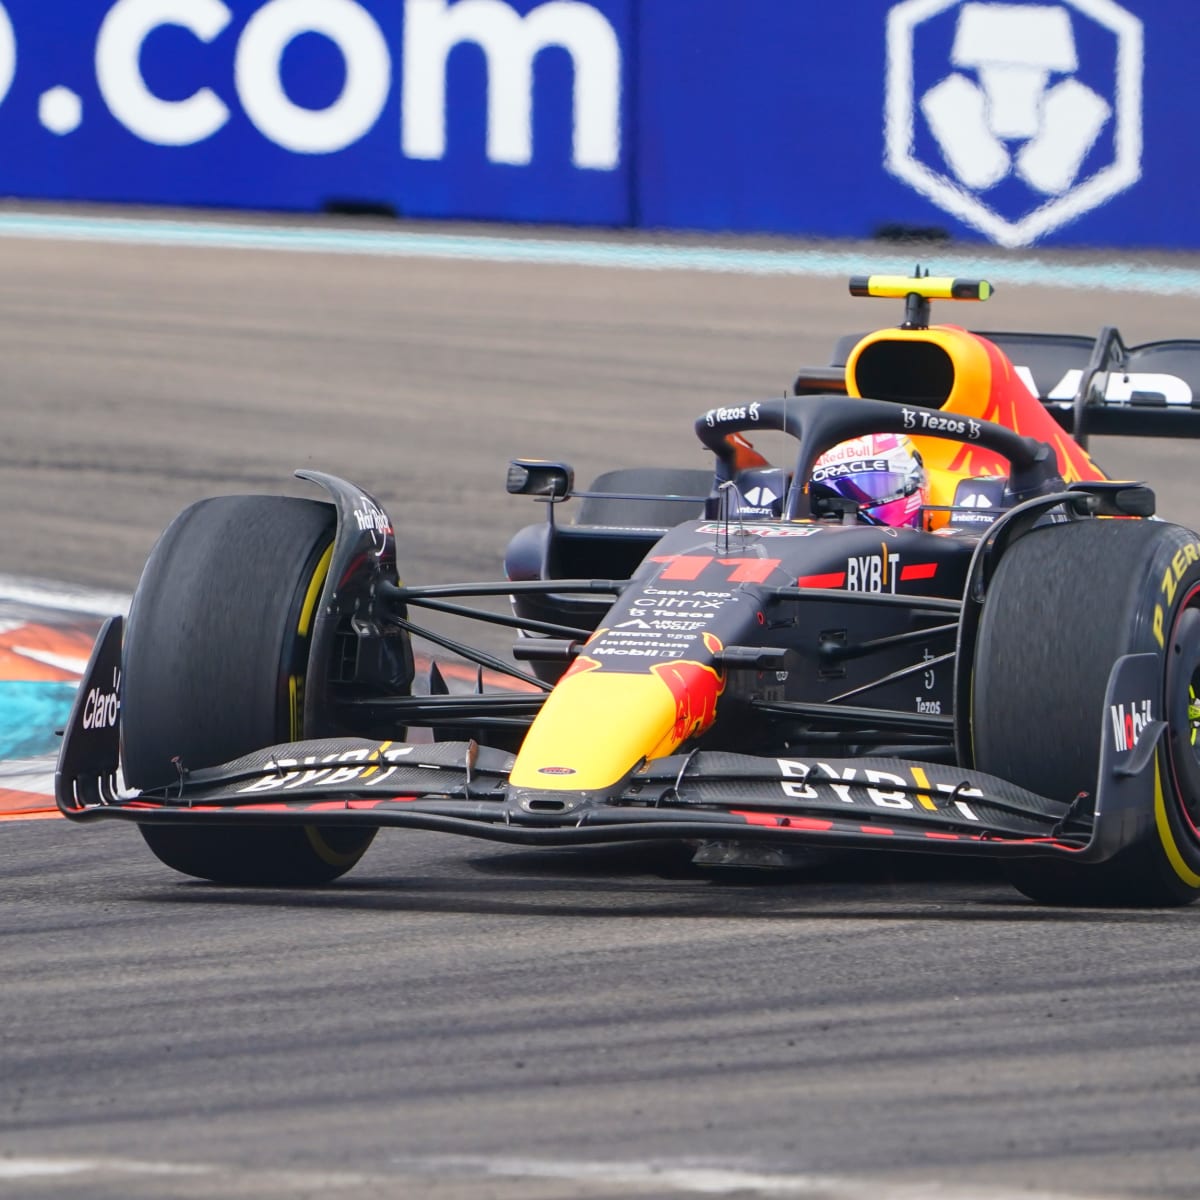 Sergio Perez Becomes First Mexican Driver to Win Monaco Grand Prix